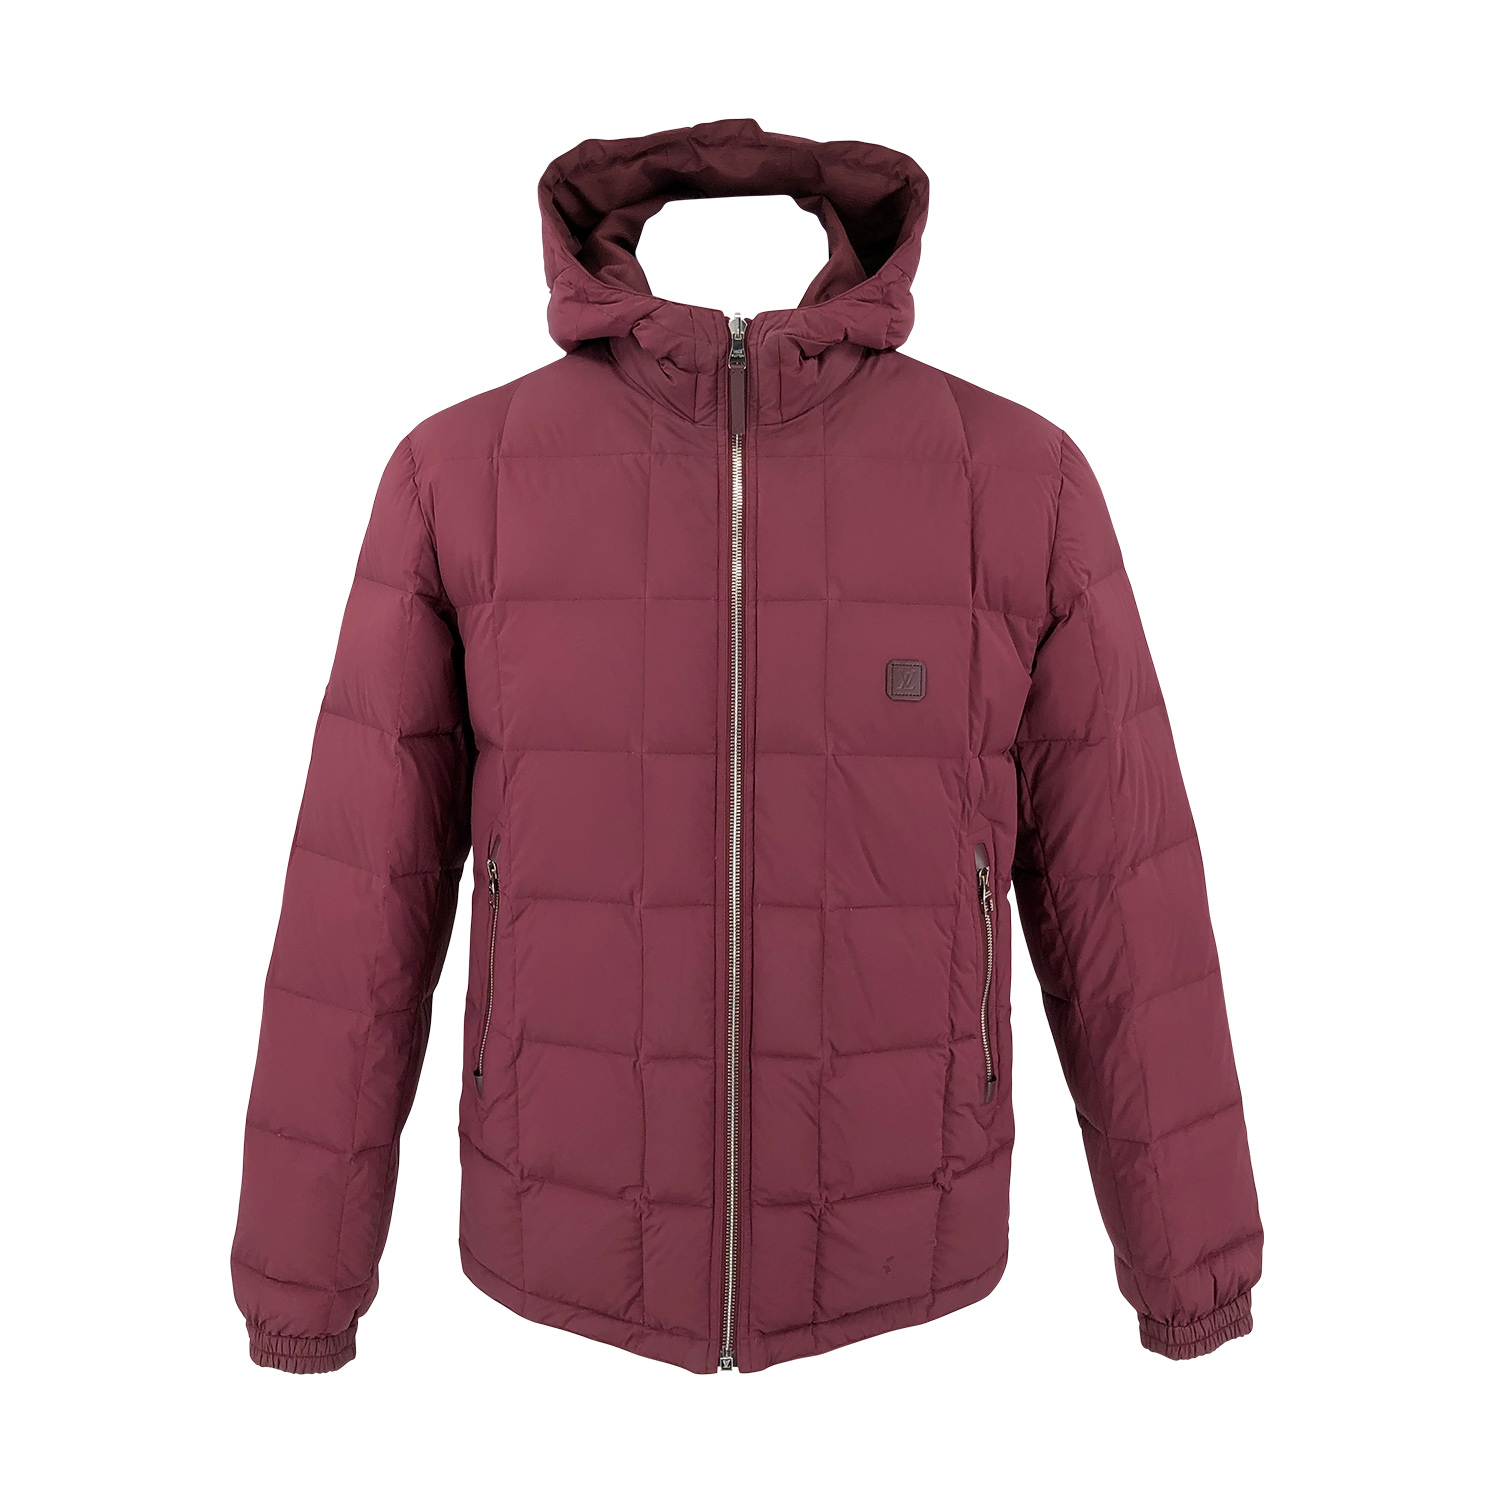 Louis Vuitton Jacken aus Baumwolle - Rot - Größe 34 - 26085473